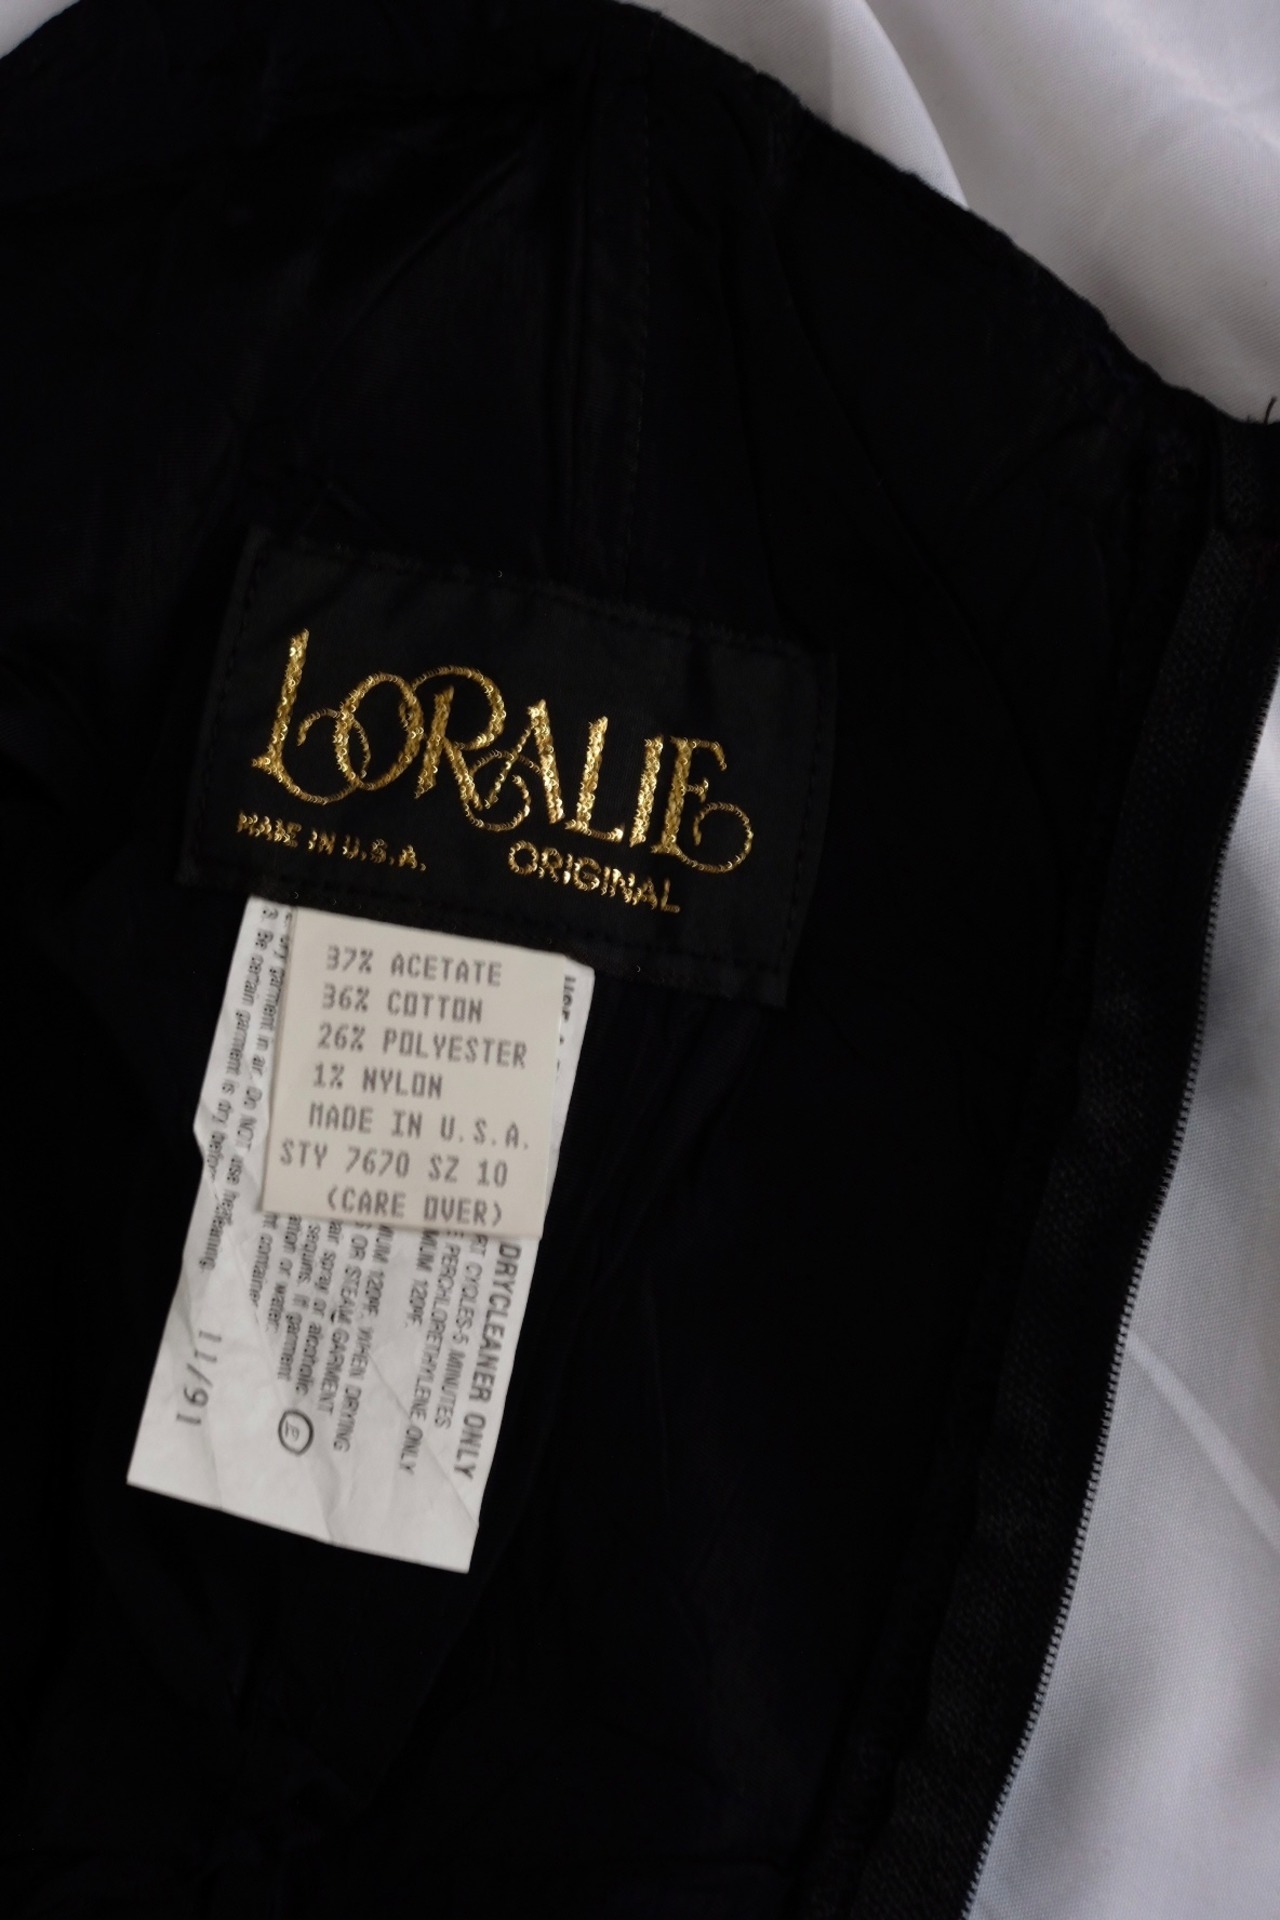 90’s “LORALIE” Prom dress Made in U.S.A